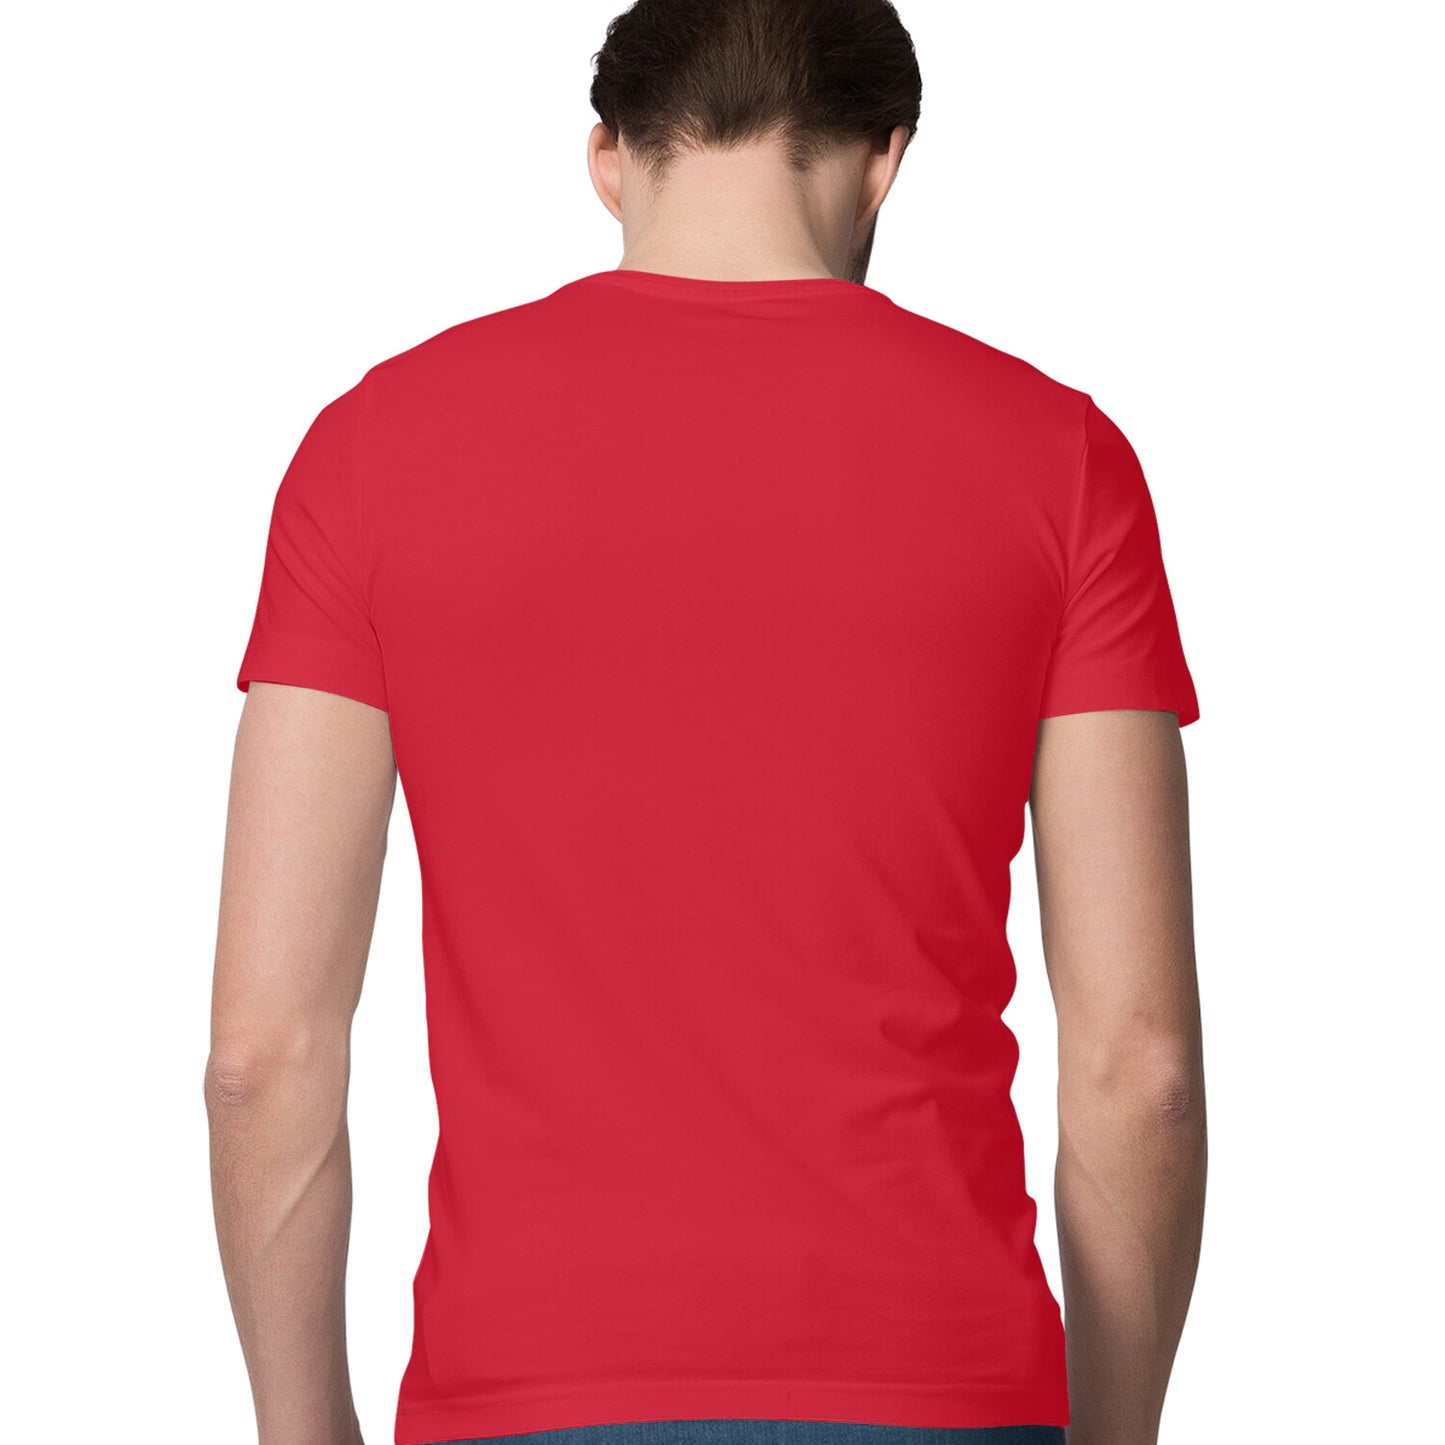 Red - Half Sleeve Round Neck T-Shirt